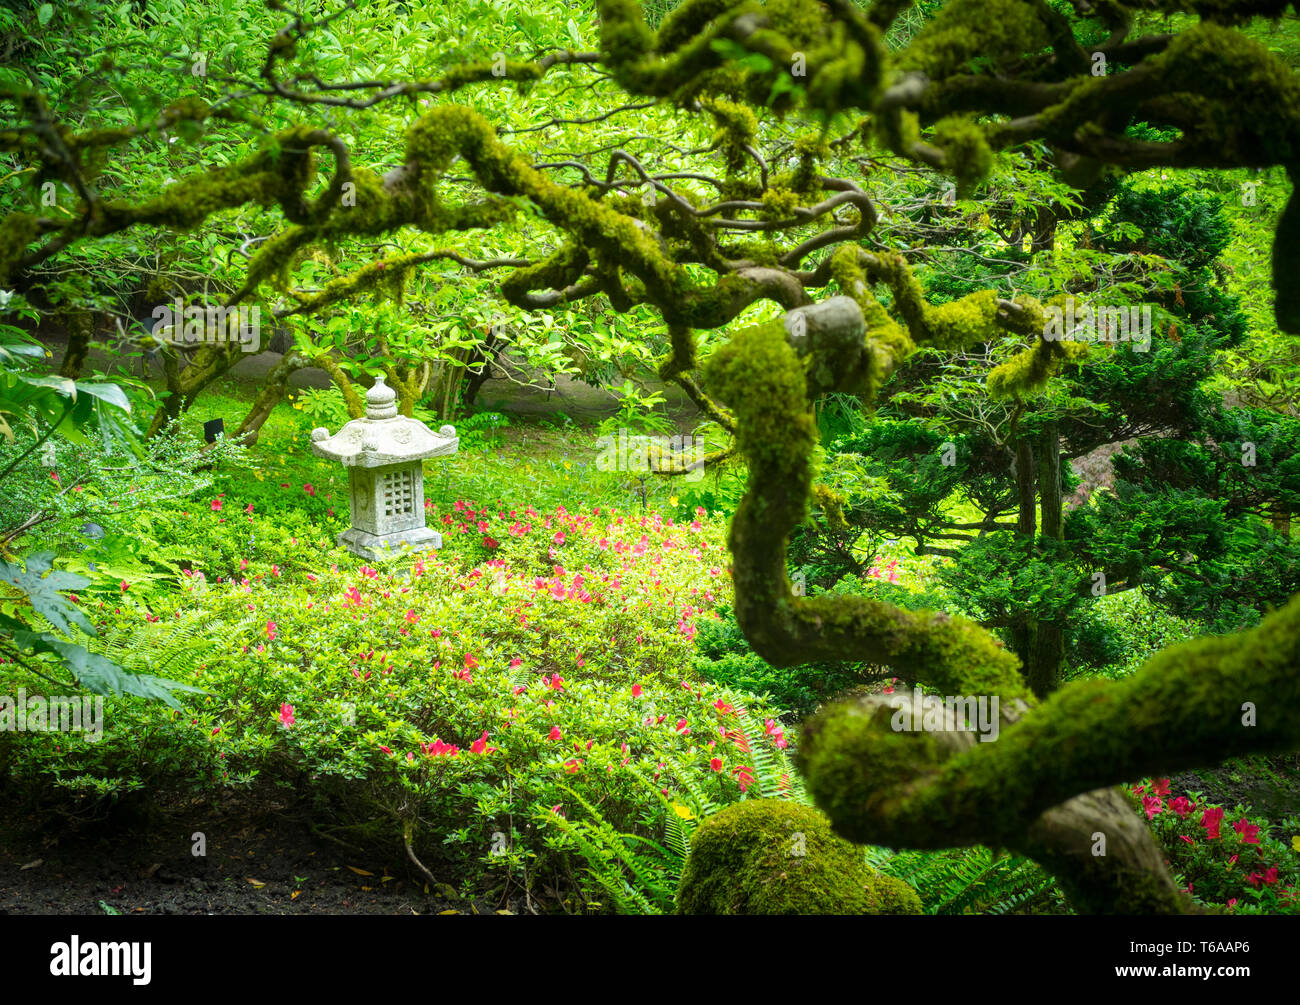 Coperte di muschio rami, aceri giapponesi e un giapponese lanterna di pietra adornano il giardino giapponese ai Giardini Butchart in estate. Brentwood Bay, Canada. Foto Stock